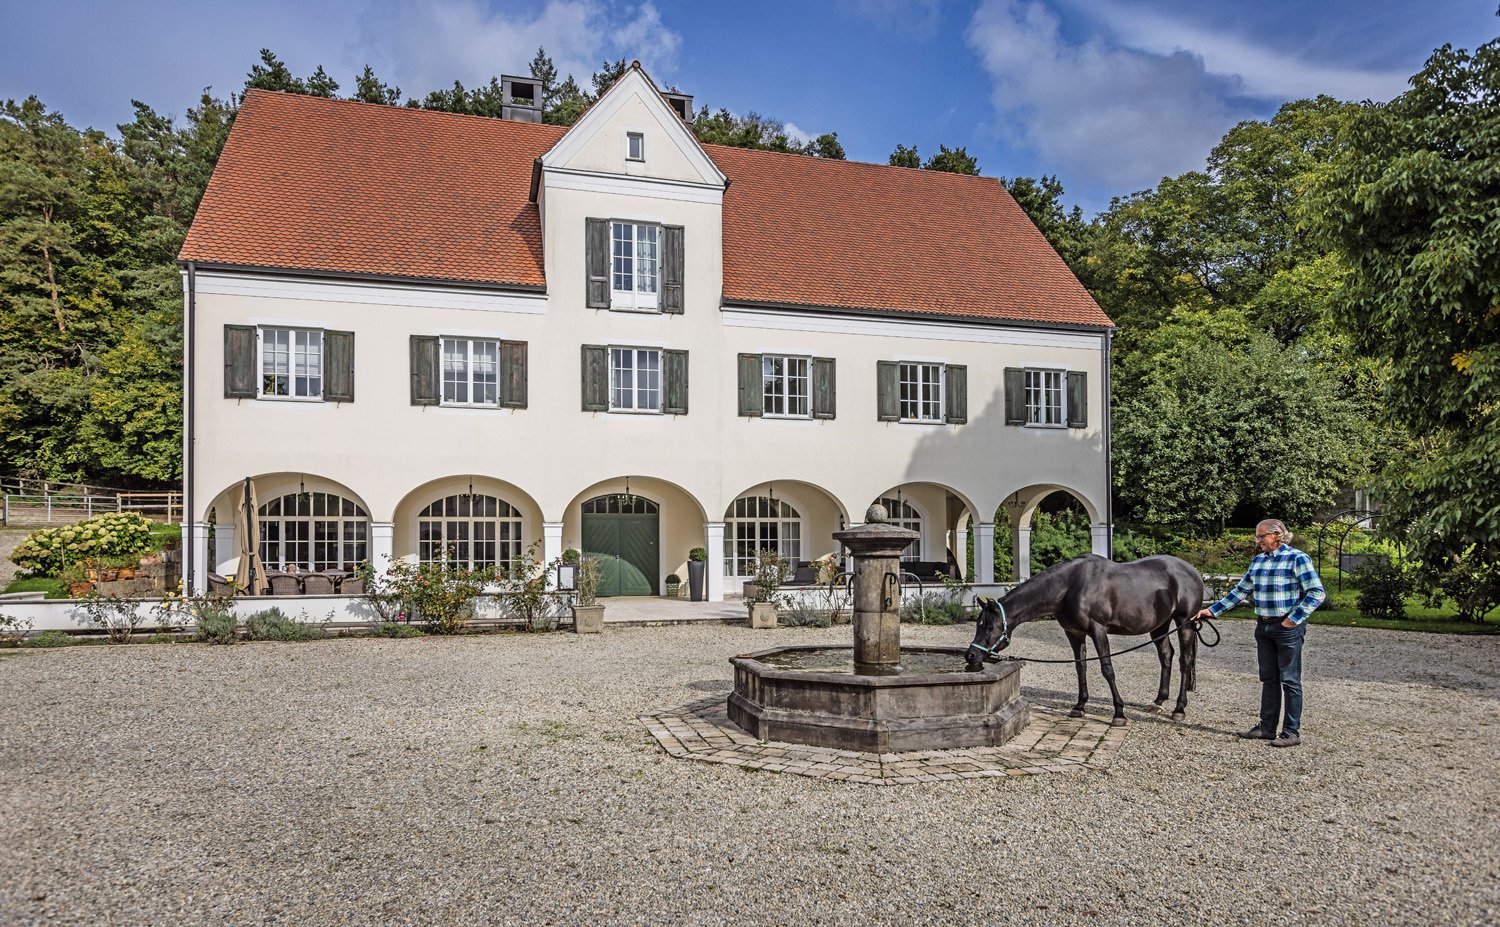 2422 bayern, pfaffenhofen an der ilm, luxus landhaus mit pferdestall zu verkaufen